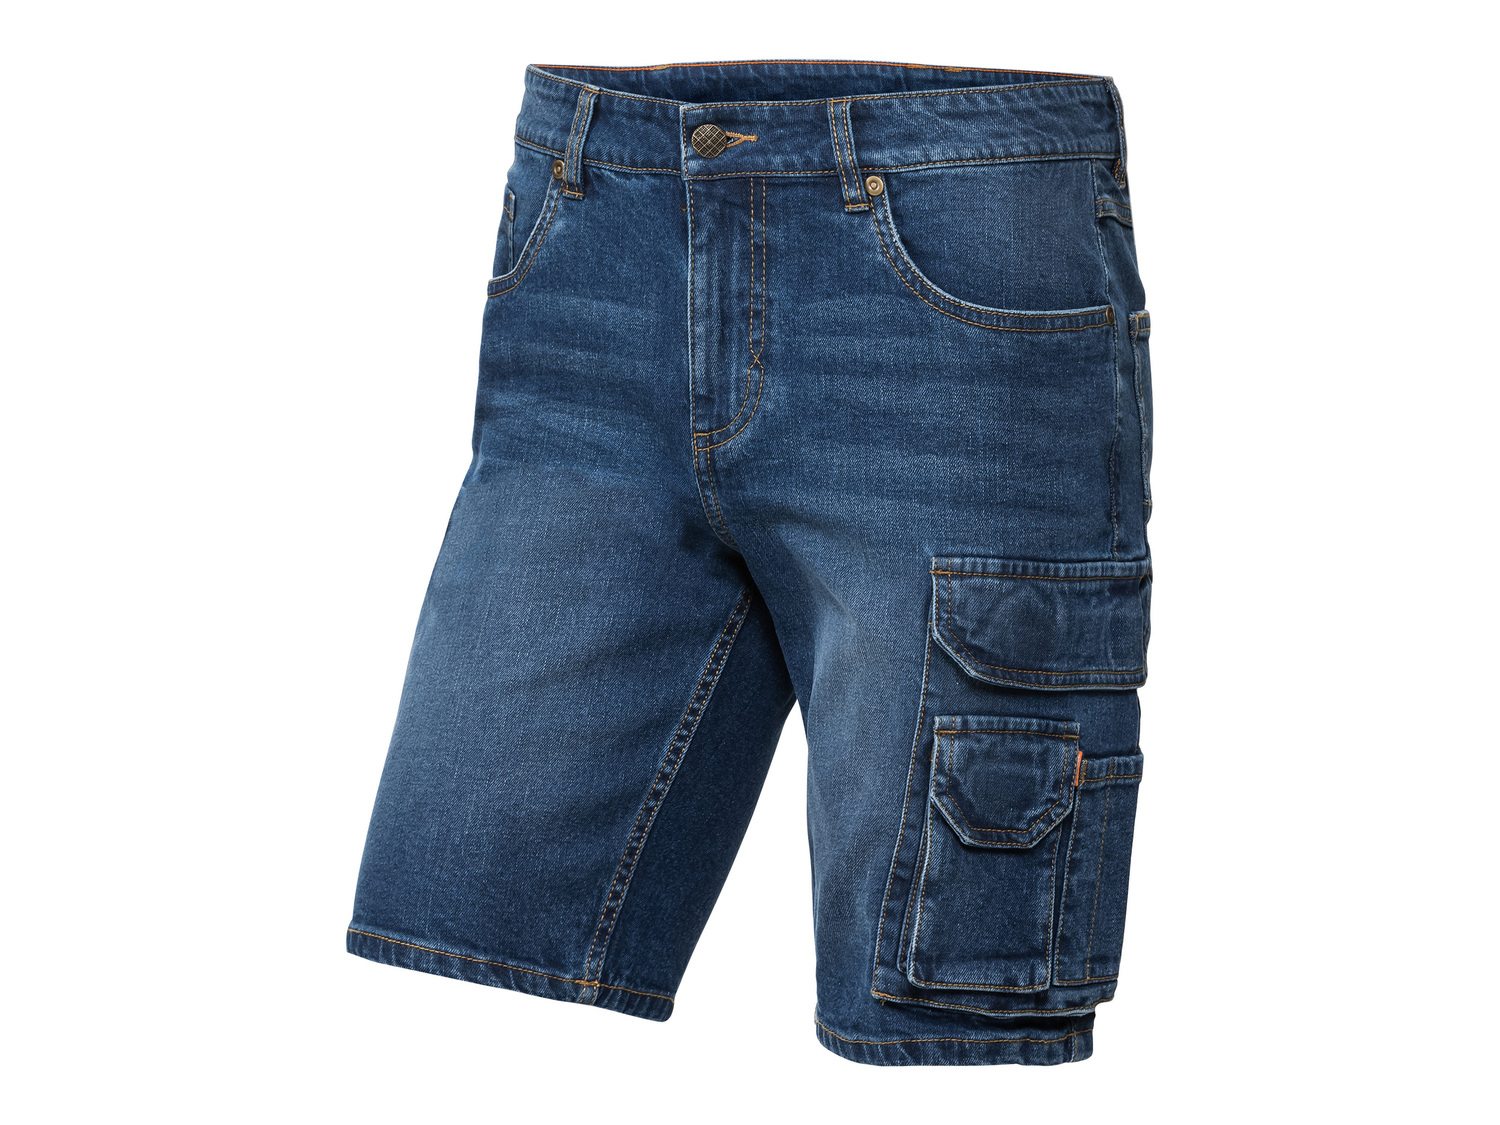 Shorts in jeans da uomo DMAX Dmax, prezzo 11.99 &#8364; 
Misure: 46-54
Taglie ...